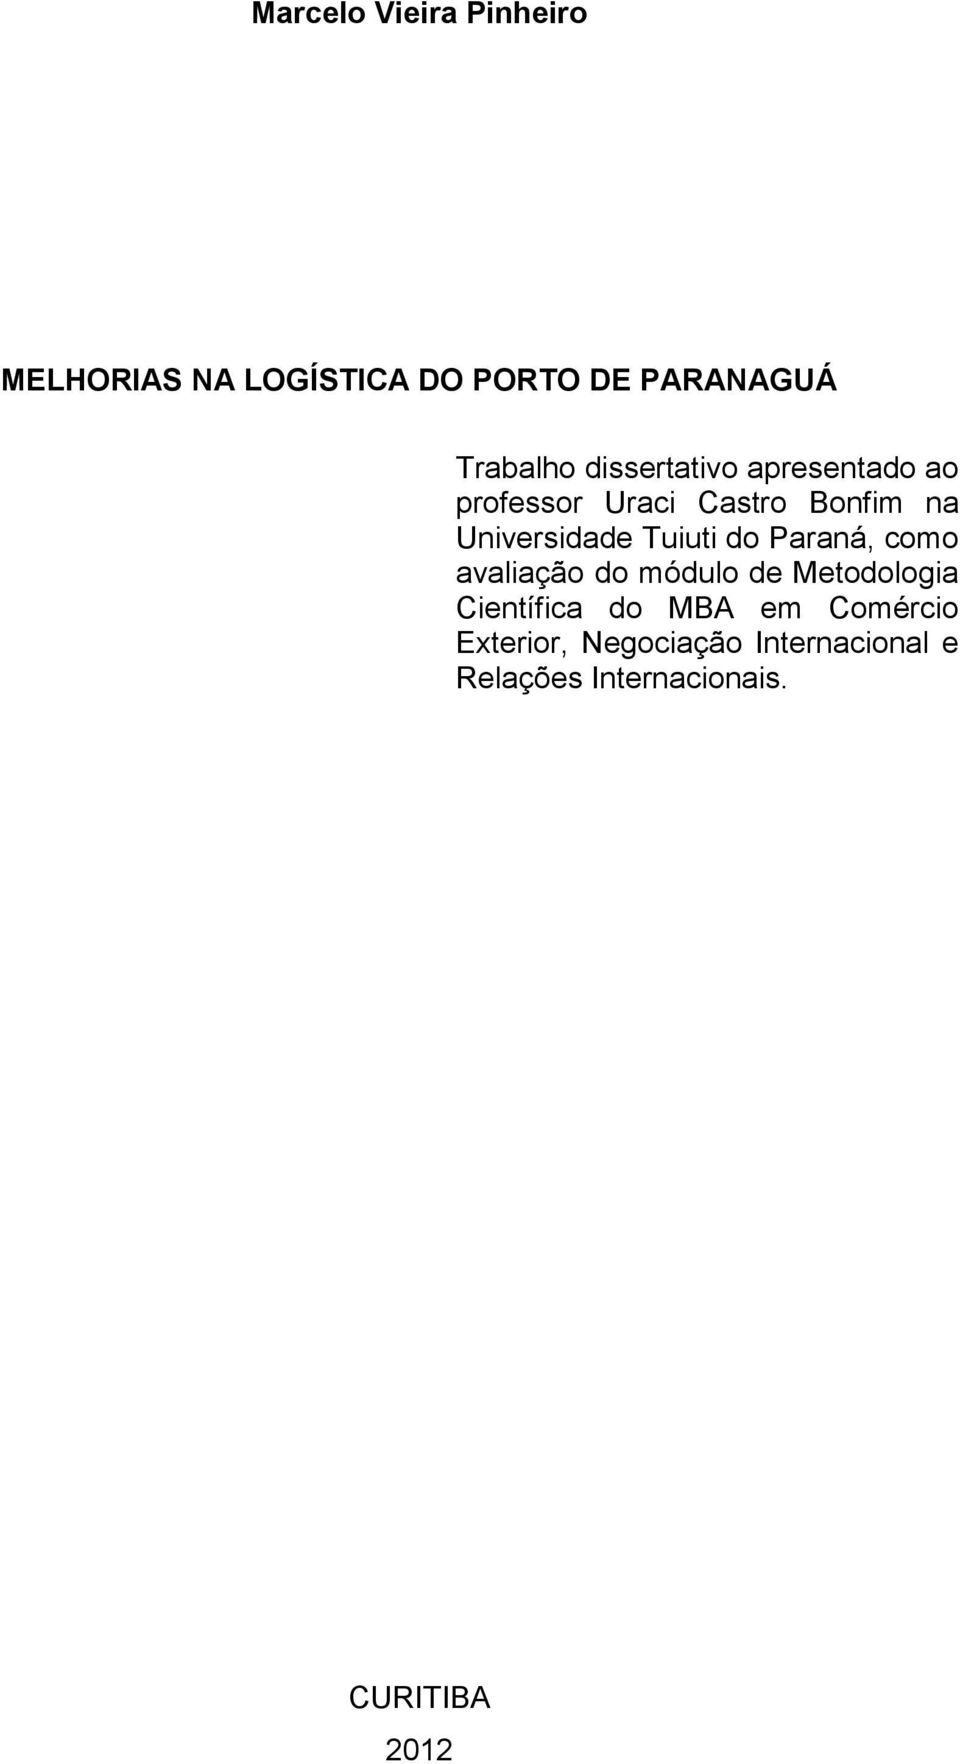 Tuiuti do Paraná, como avaliação do módulo de Metodologia Científica do MBA em